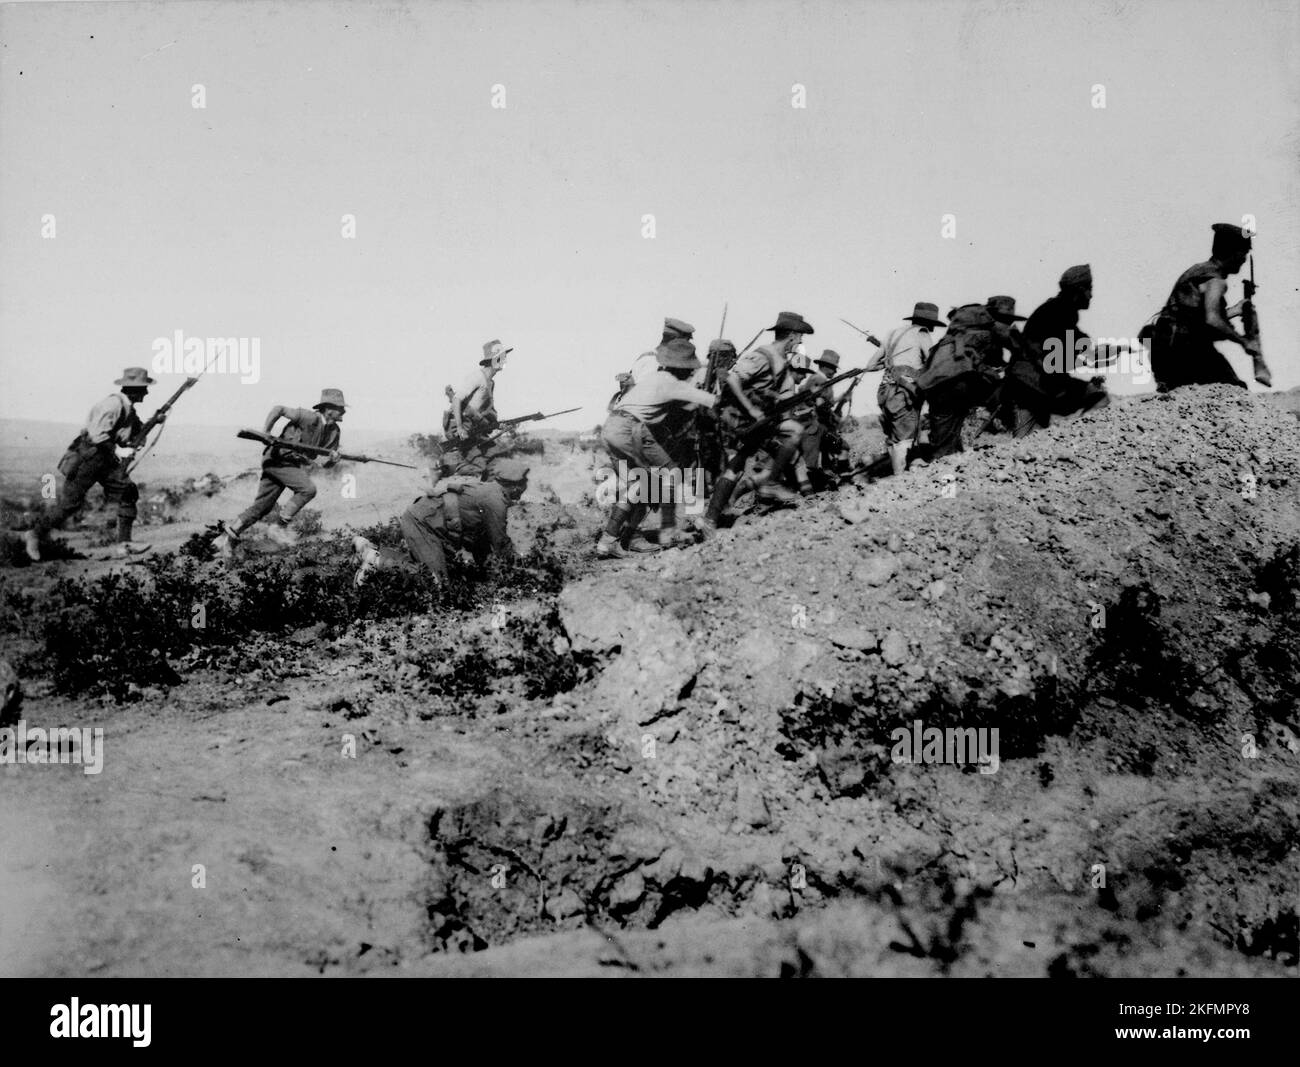 GALLIPOLI, TURQUIE - vers 1918 - scène juste avant l'évacuation à Anzac. Des troupes australiennes chargent près d'une tranchée turque. Lorsqu'ils sont arrivés, le Banque D'Images